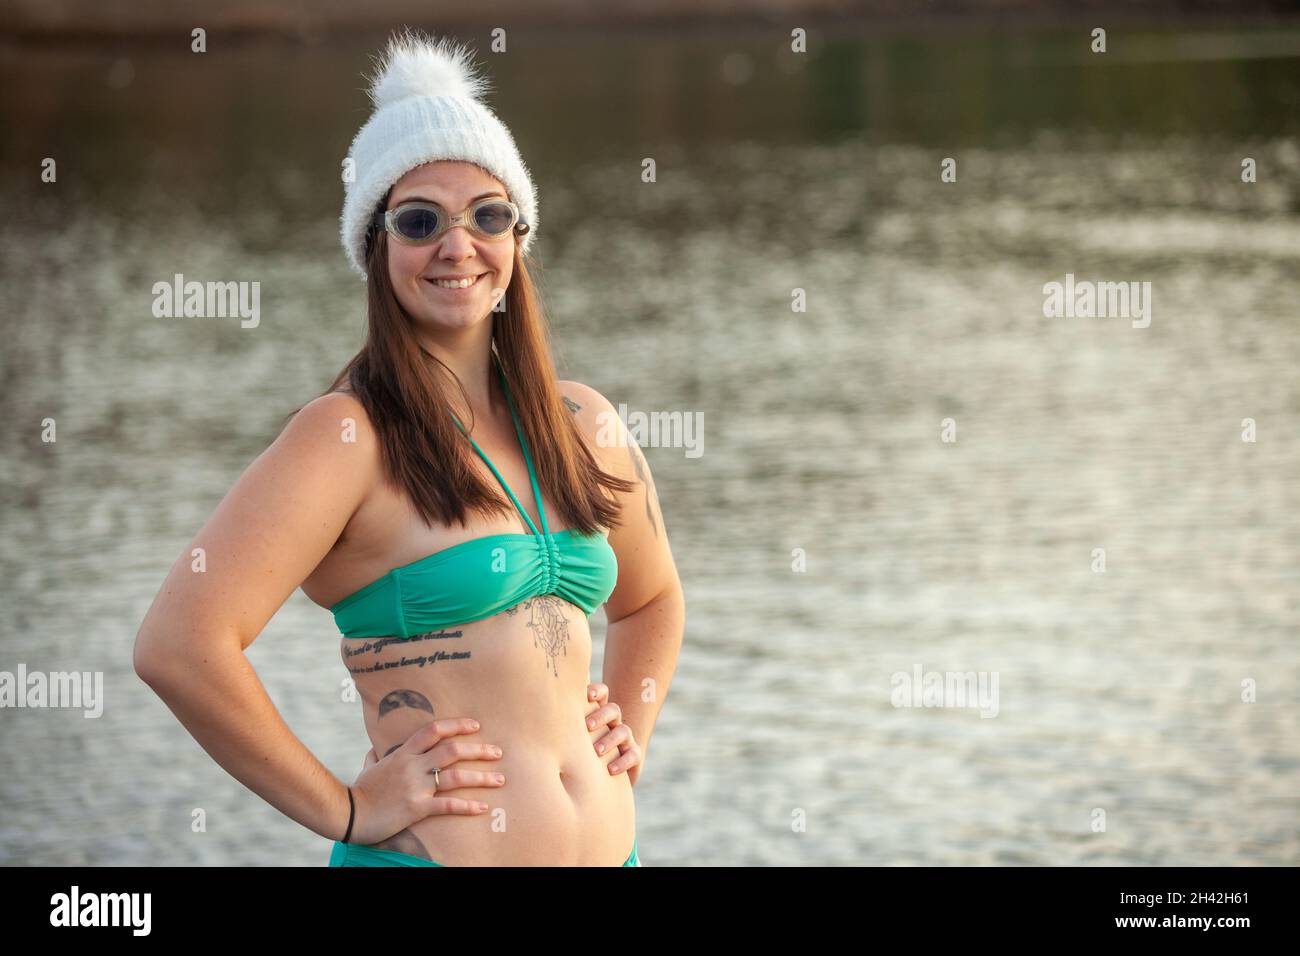 Die junge Frau trägt einen Bikini, einen Wollhut und eine Schwimmbrille neben dem Meer und ist bereit für ein kaltes Bad Stockfoto